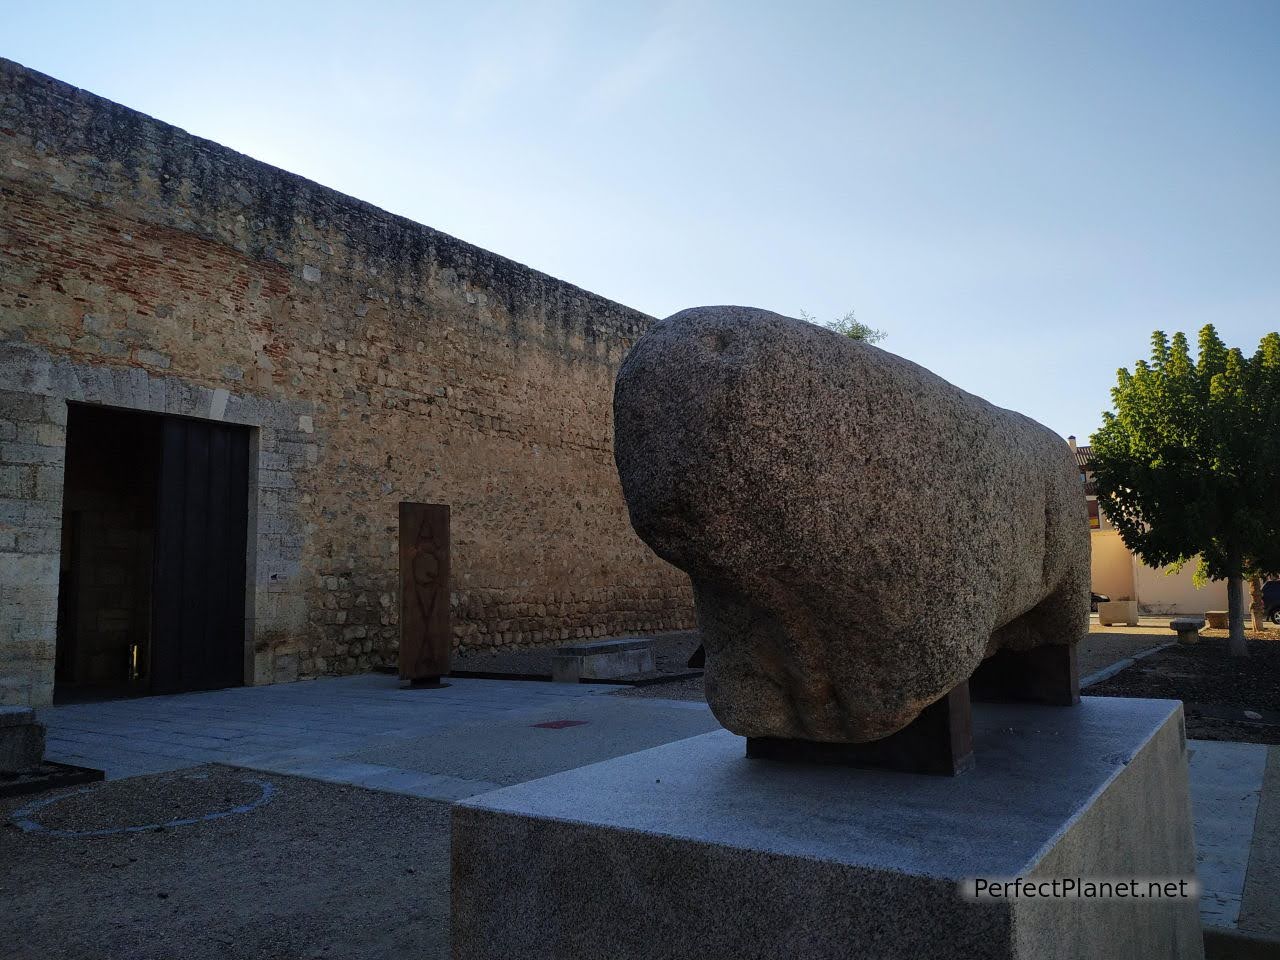 Bull of stone